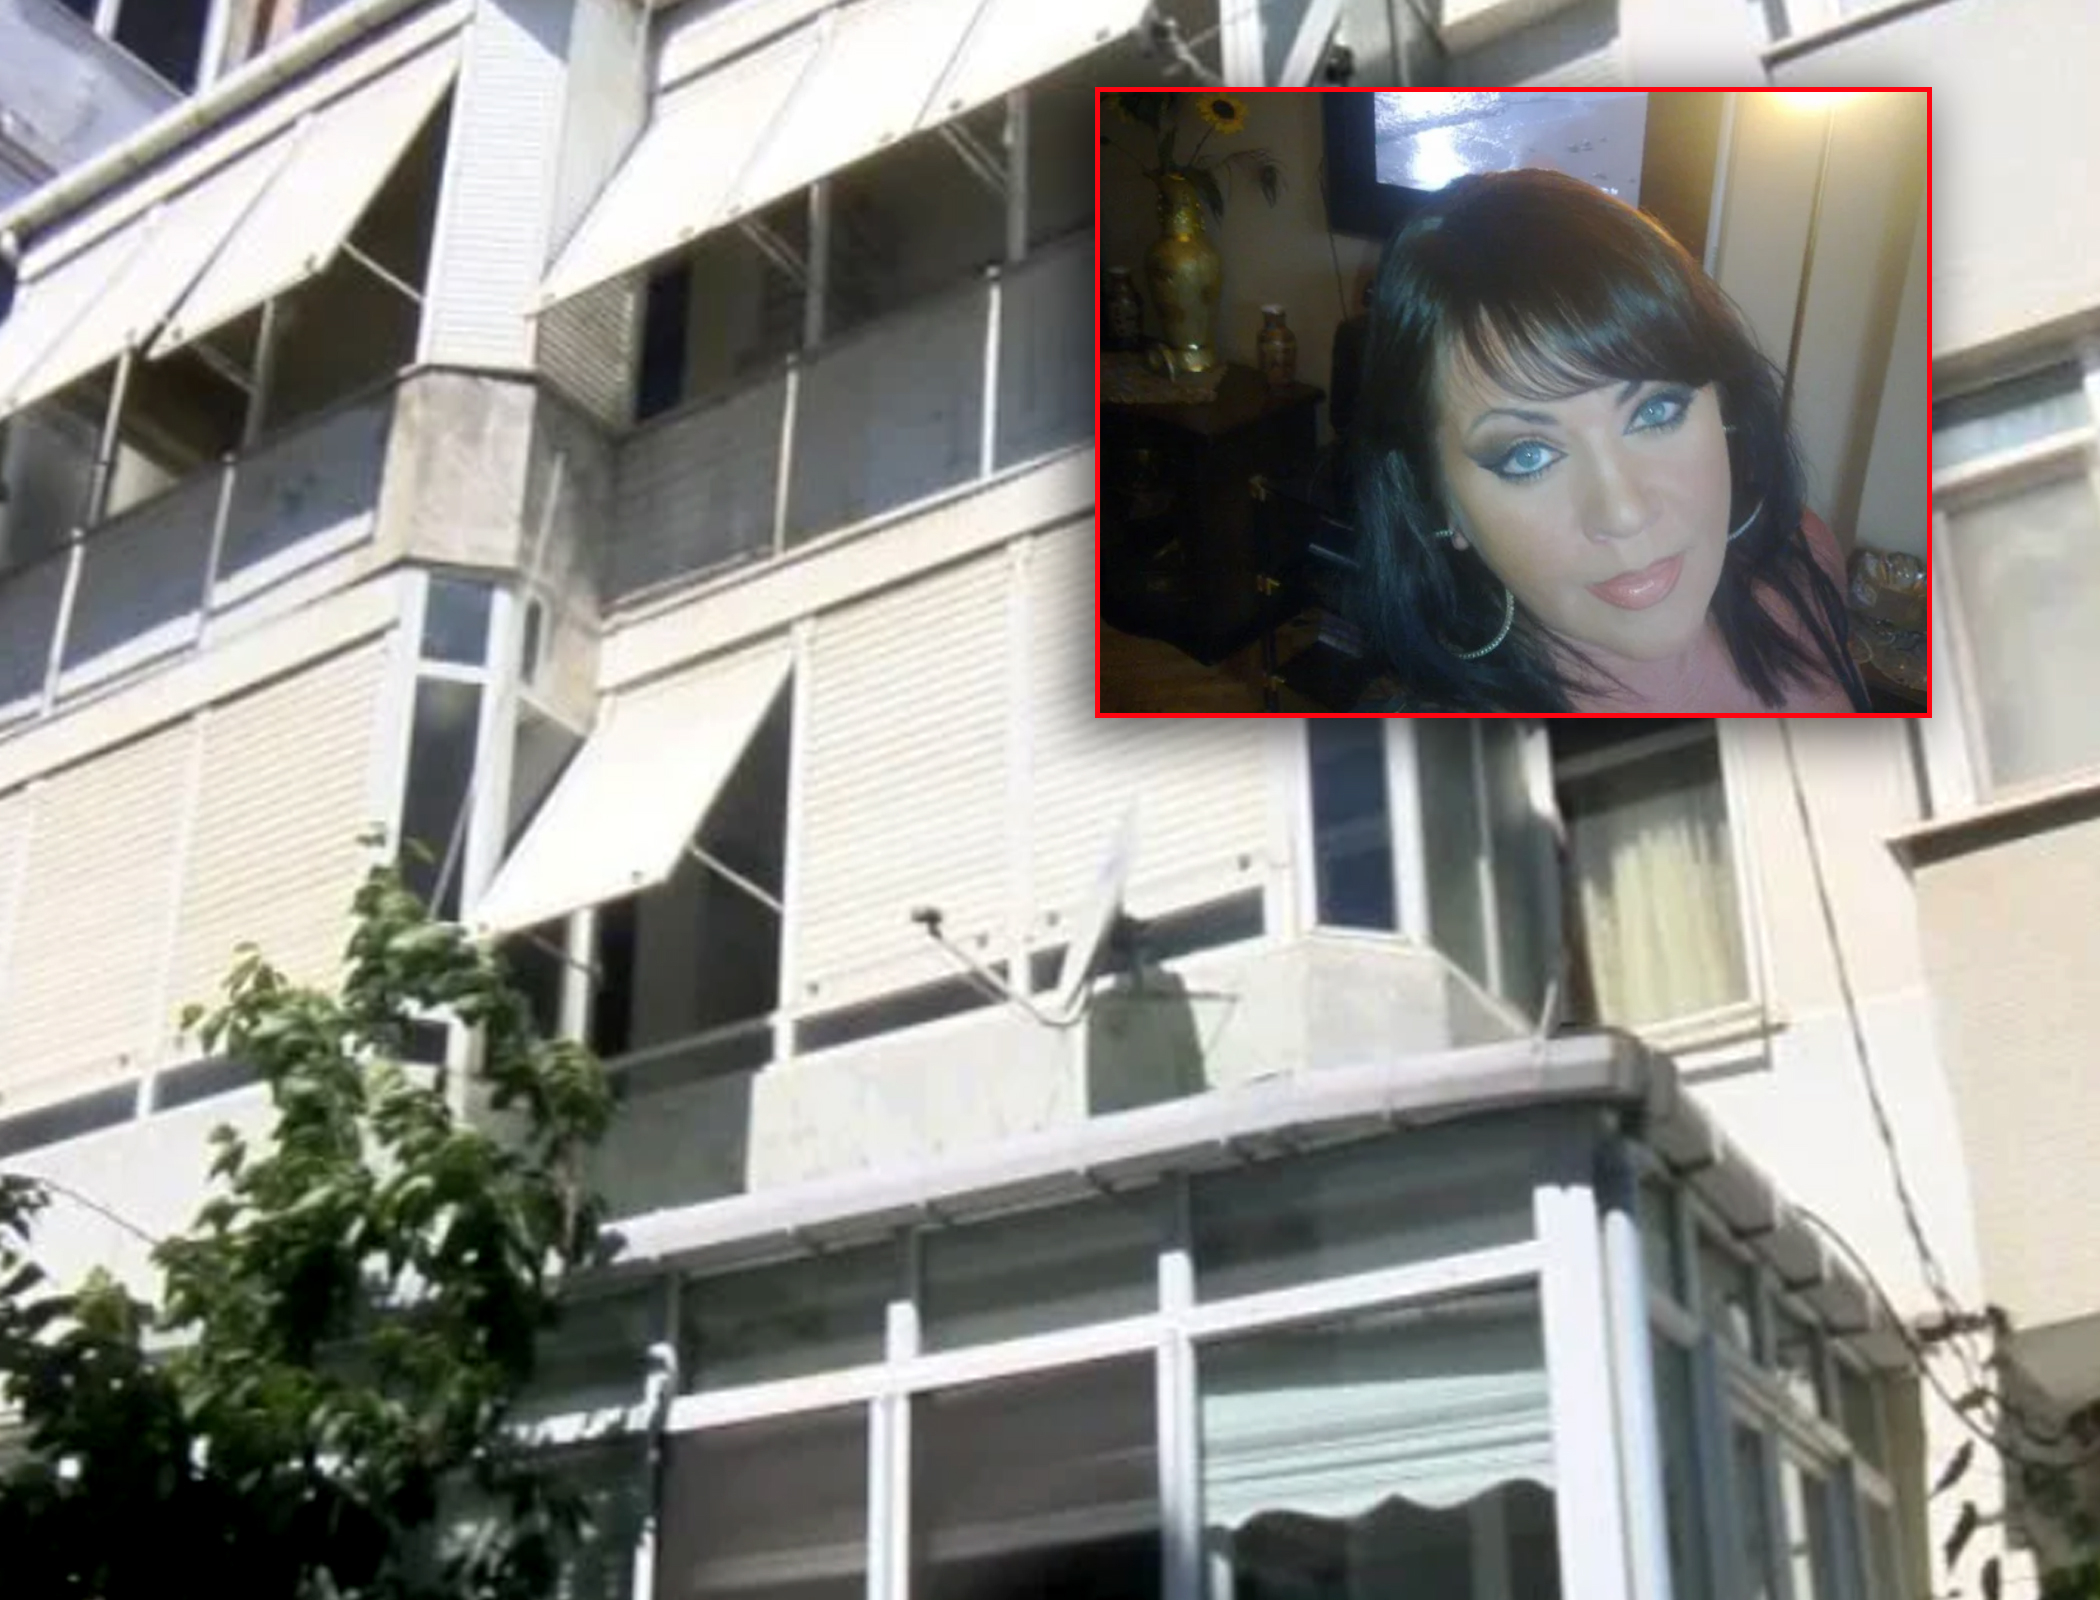 Türkiyəli ərindən ayrılan rus qadın müəmmalı şəkildə öldürüldü - VİDEO